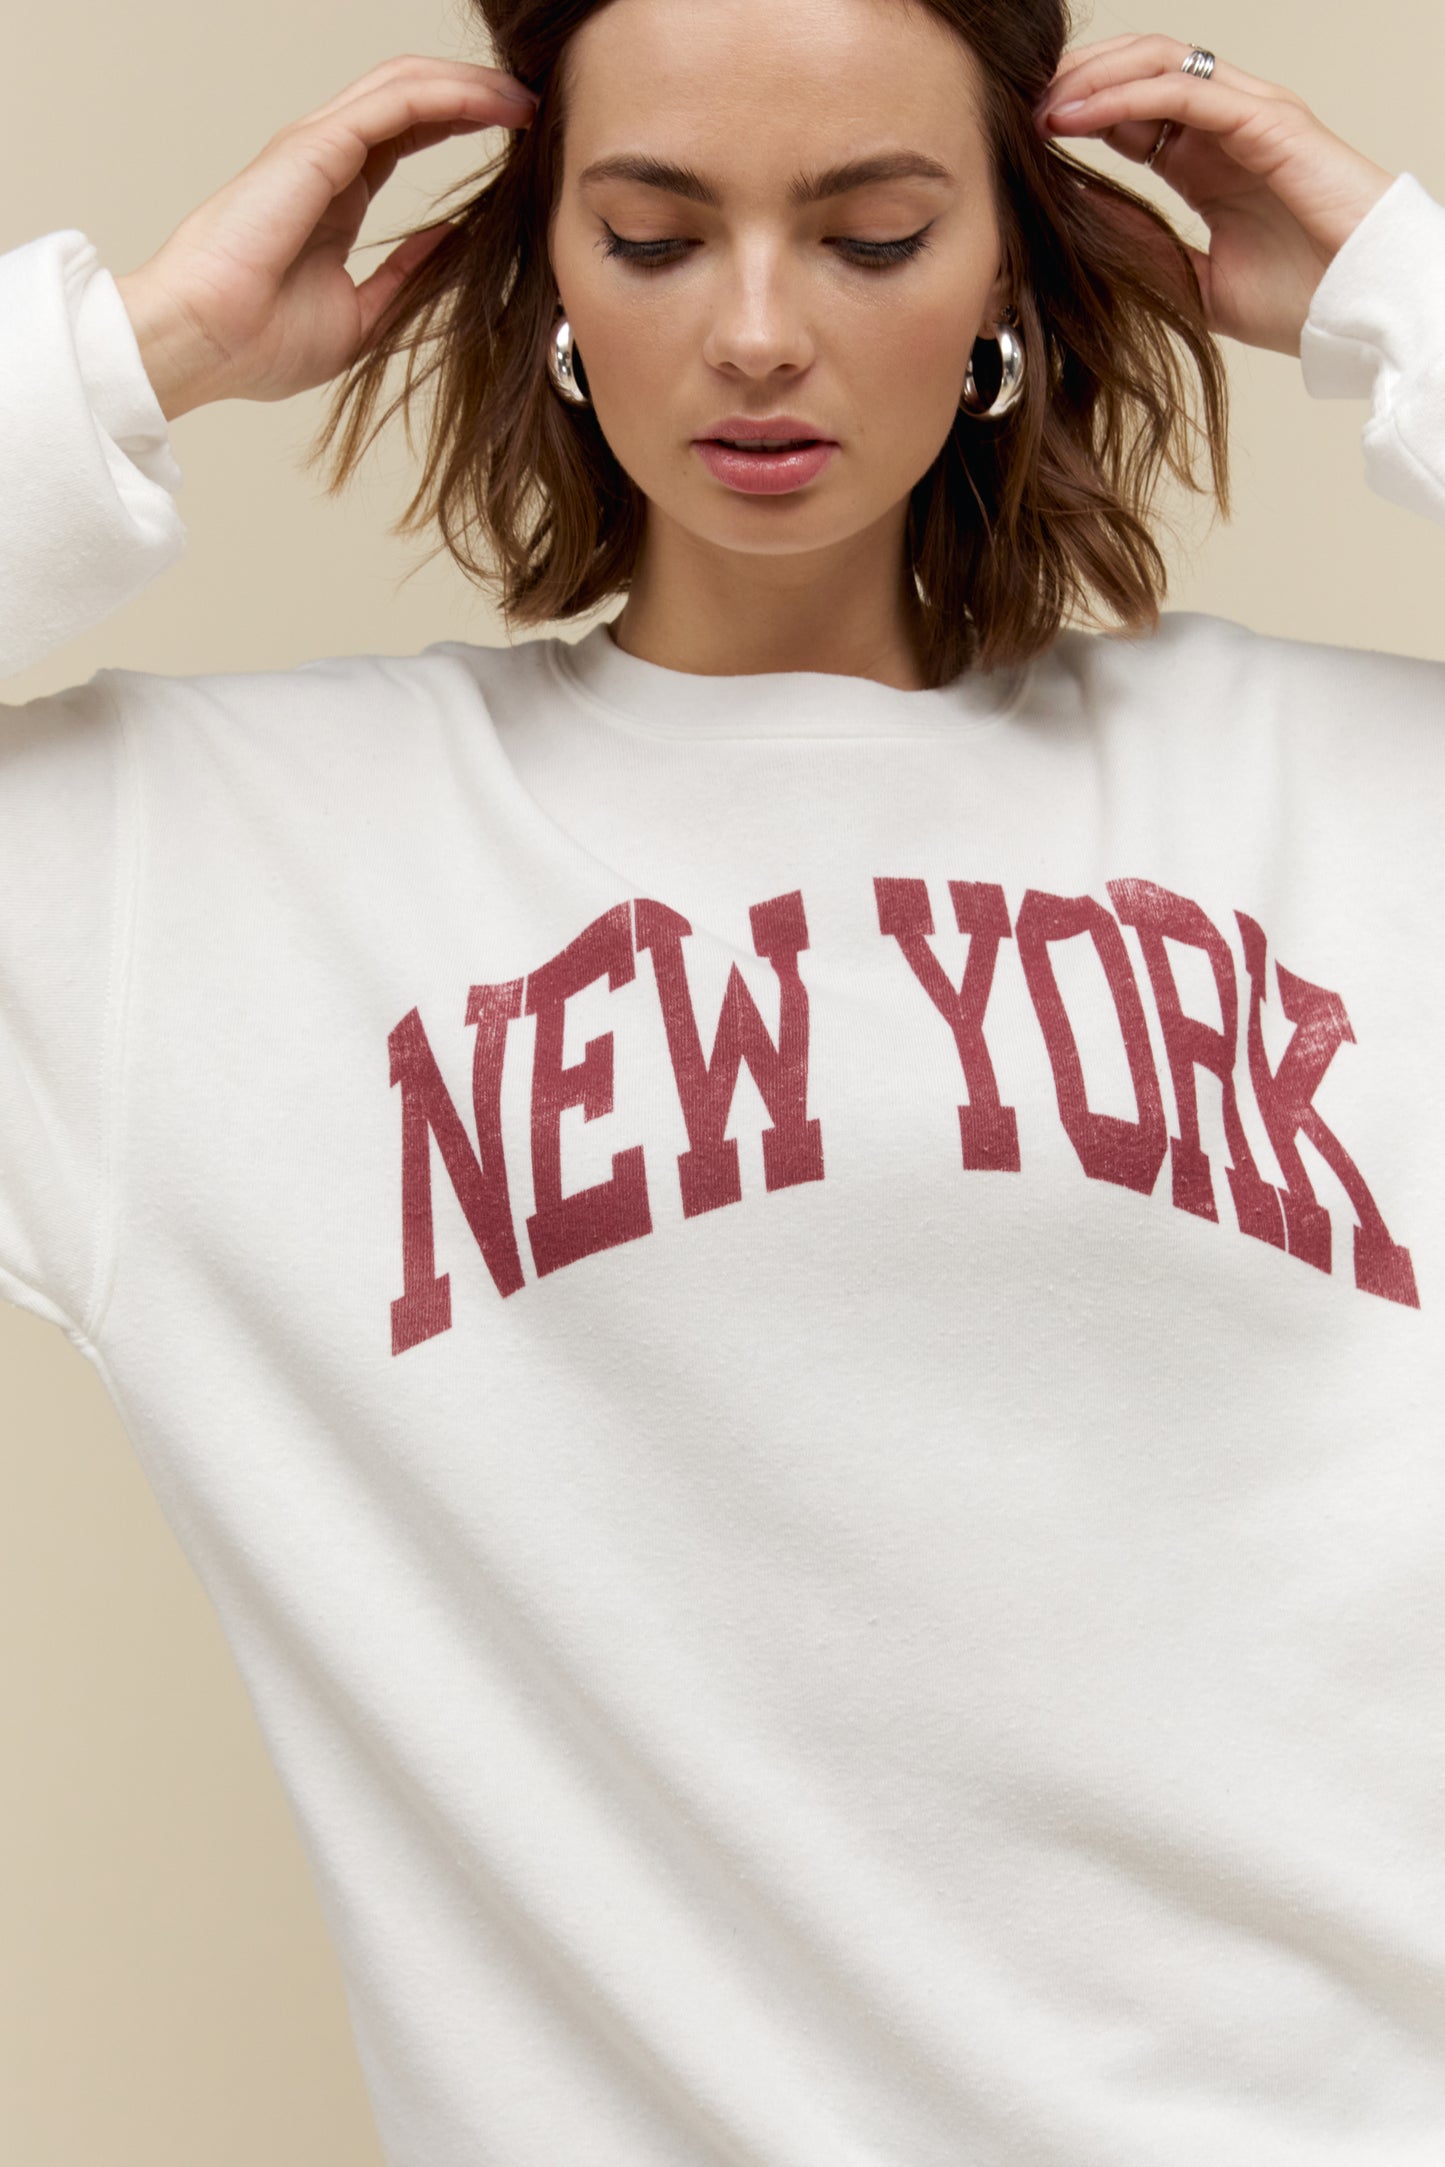 Model wearing a 'New York' collegiate style sweatshirt in a soft tri-blend fleece